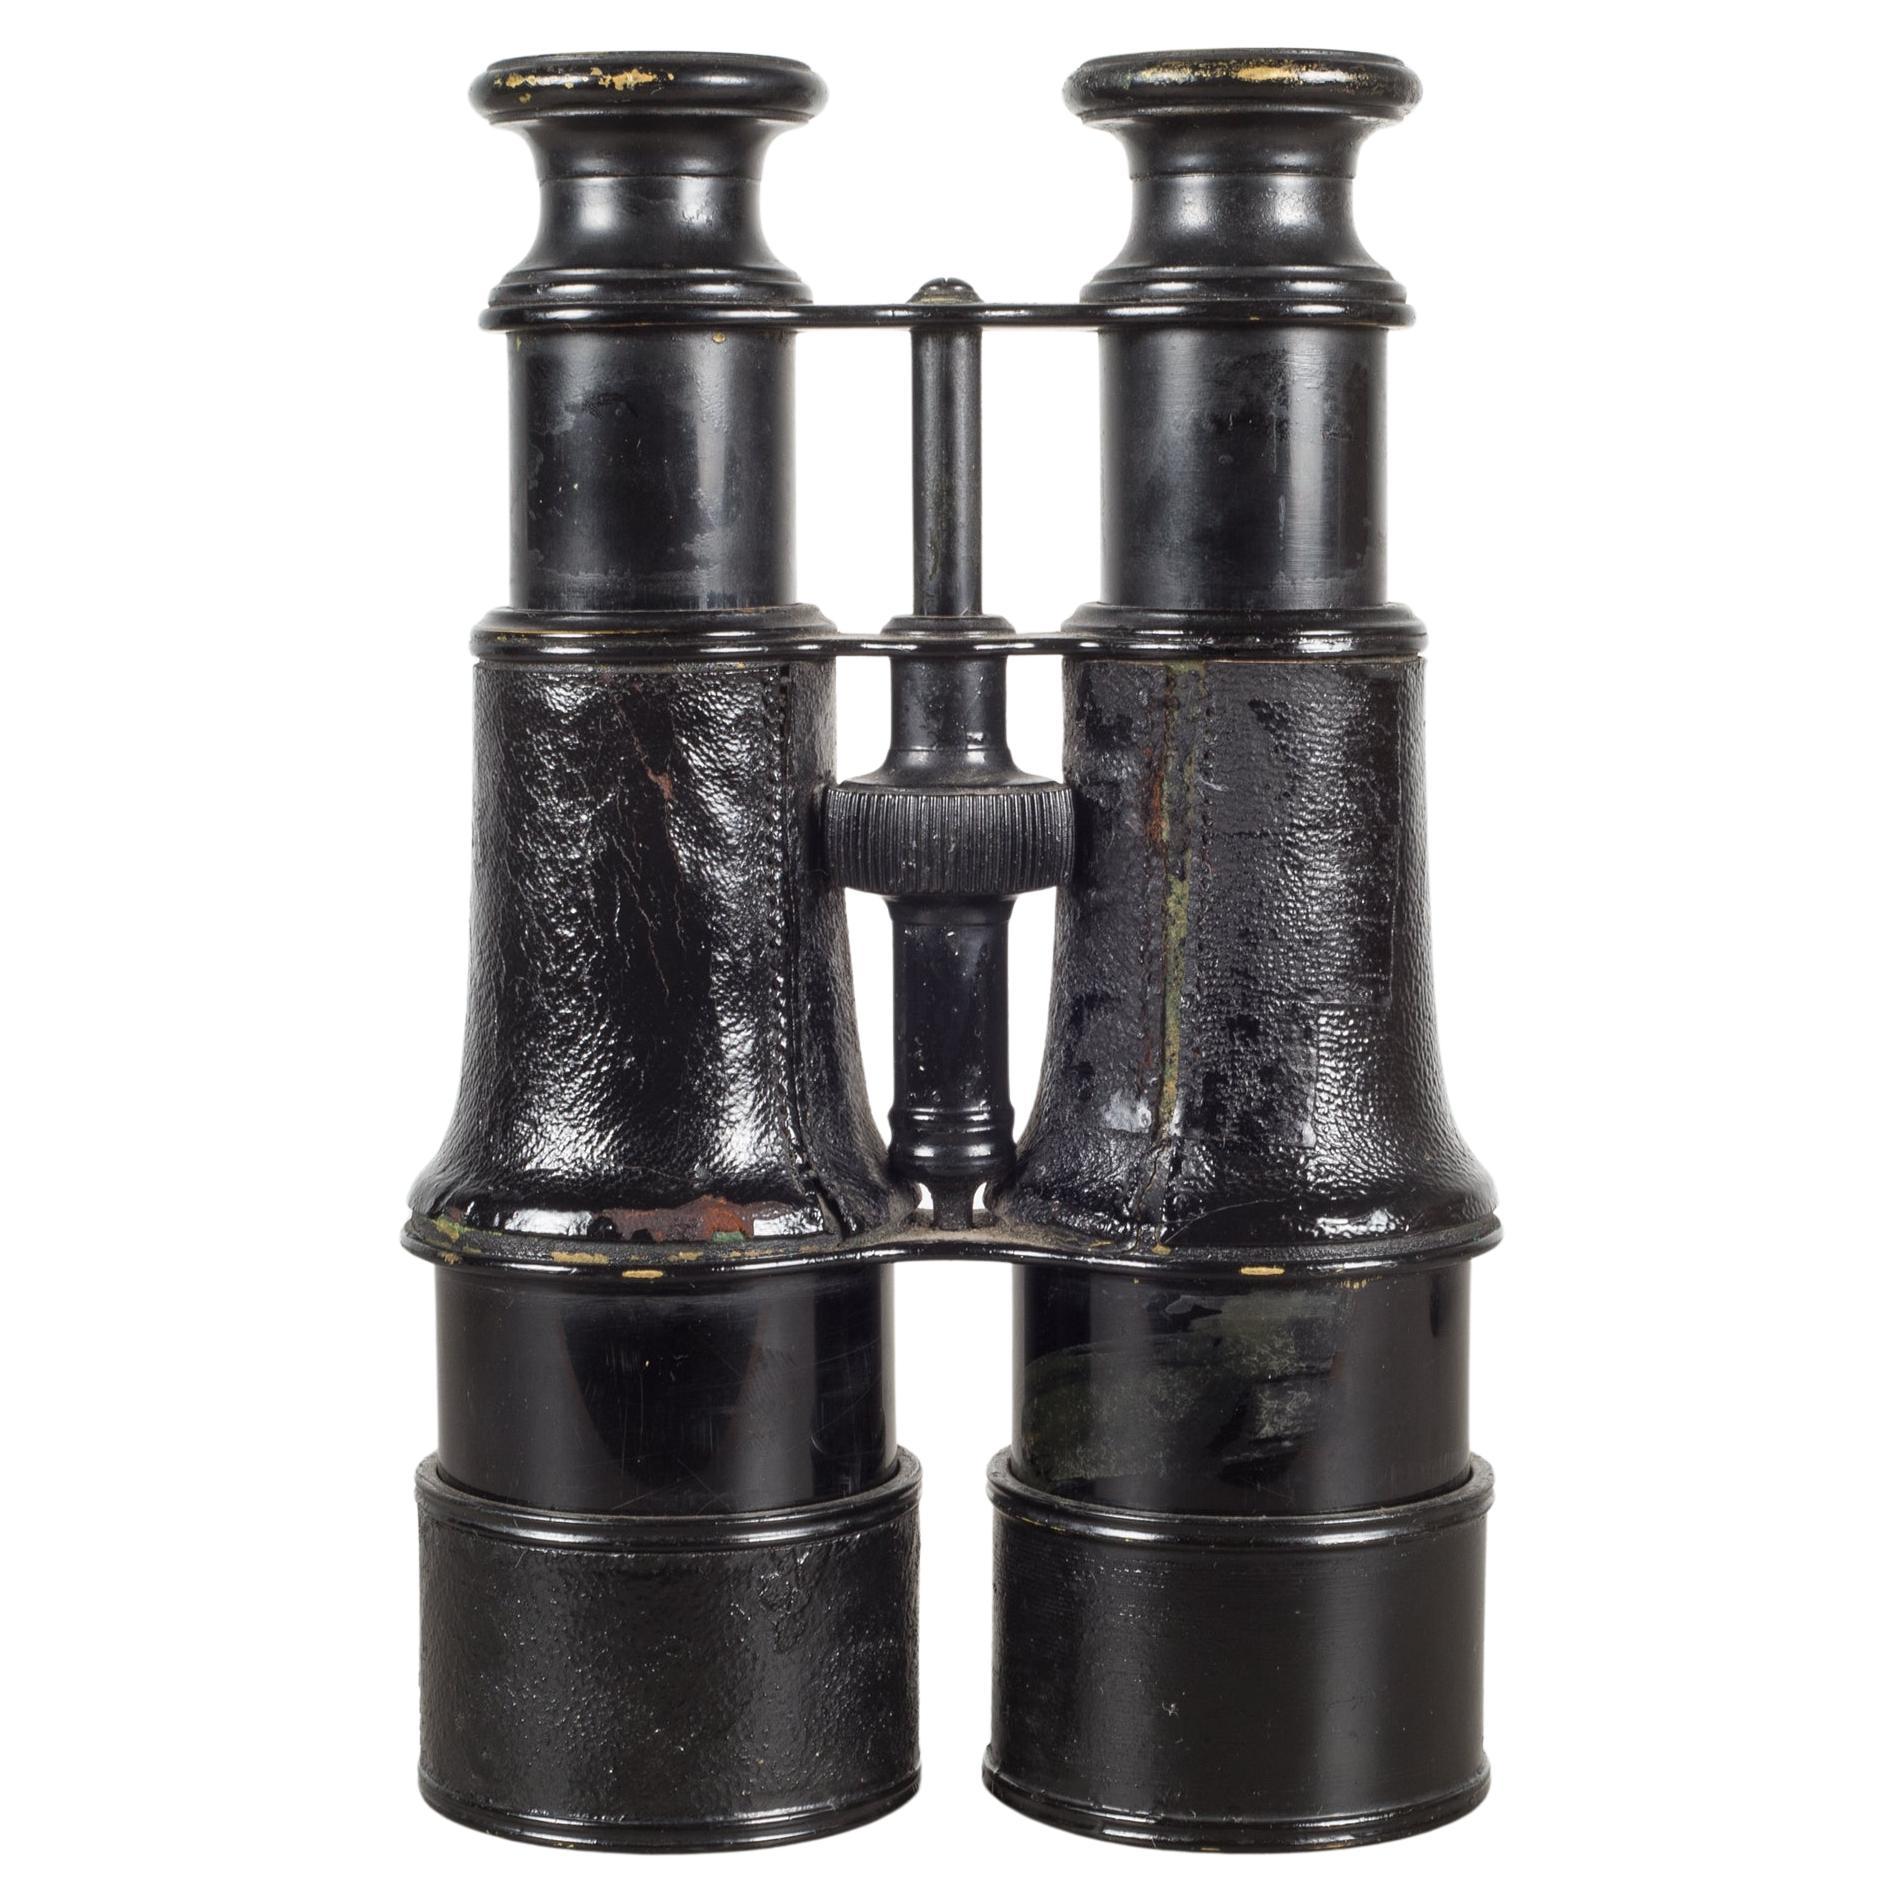 19th century binoculars